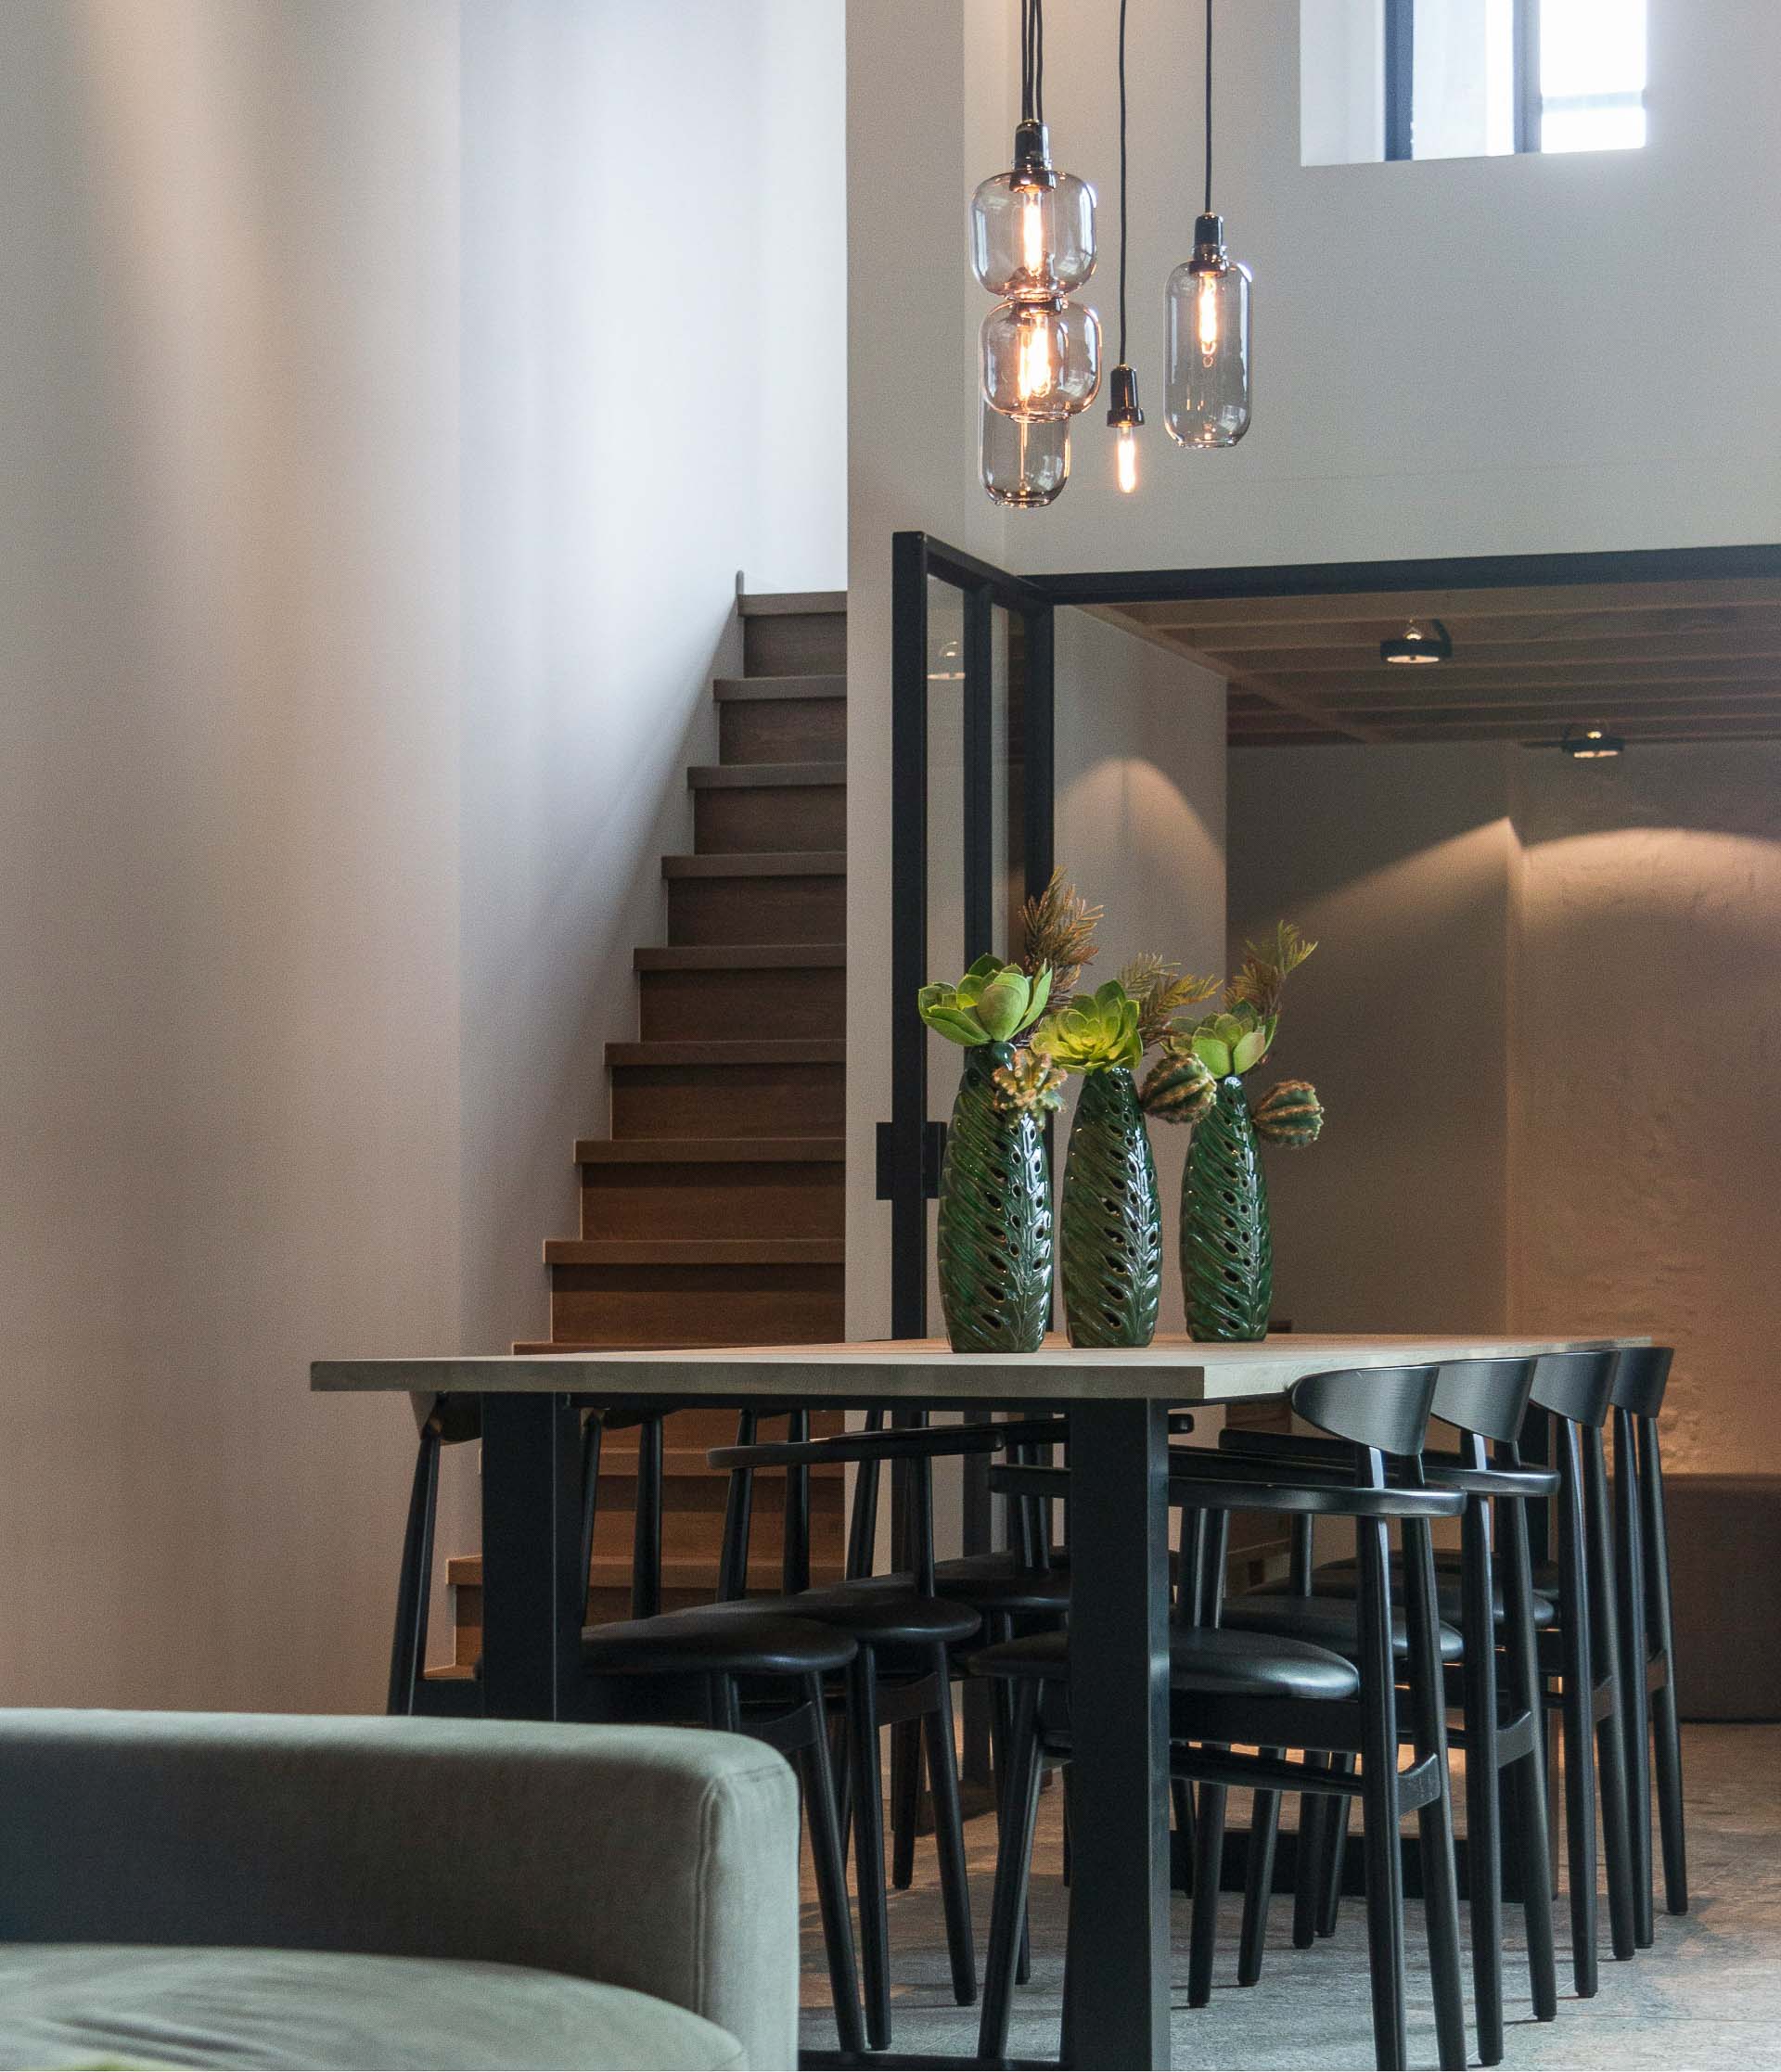 Salle à manger minimaliste moderne par MarieMakos Architecture Intérieur à Sciez avec éclairage suspendu et escalier en bois.